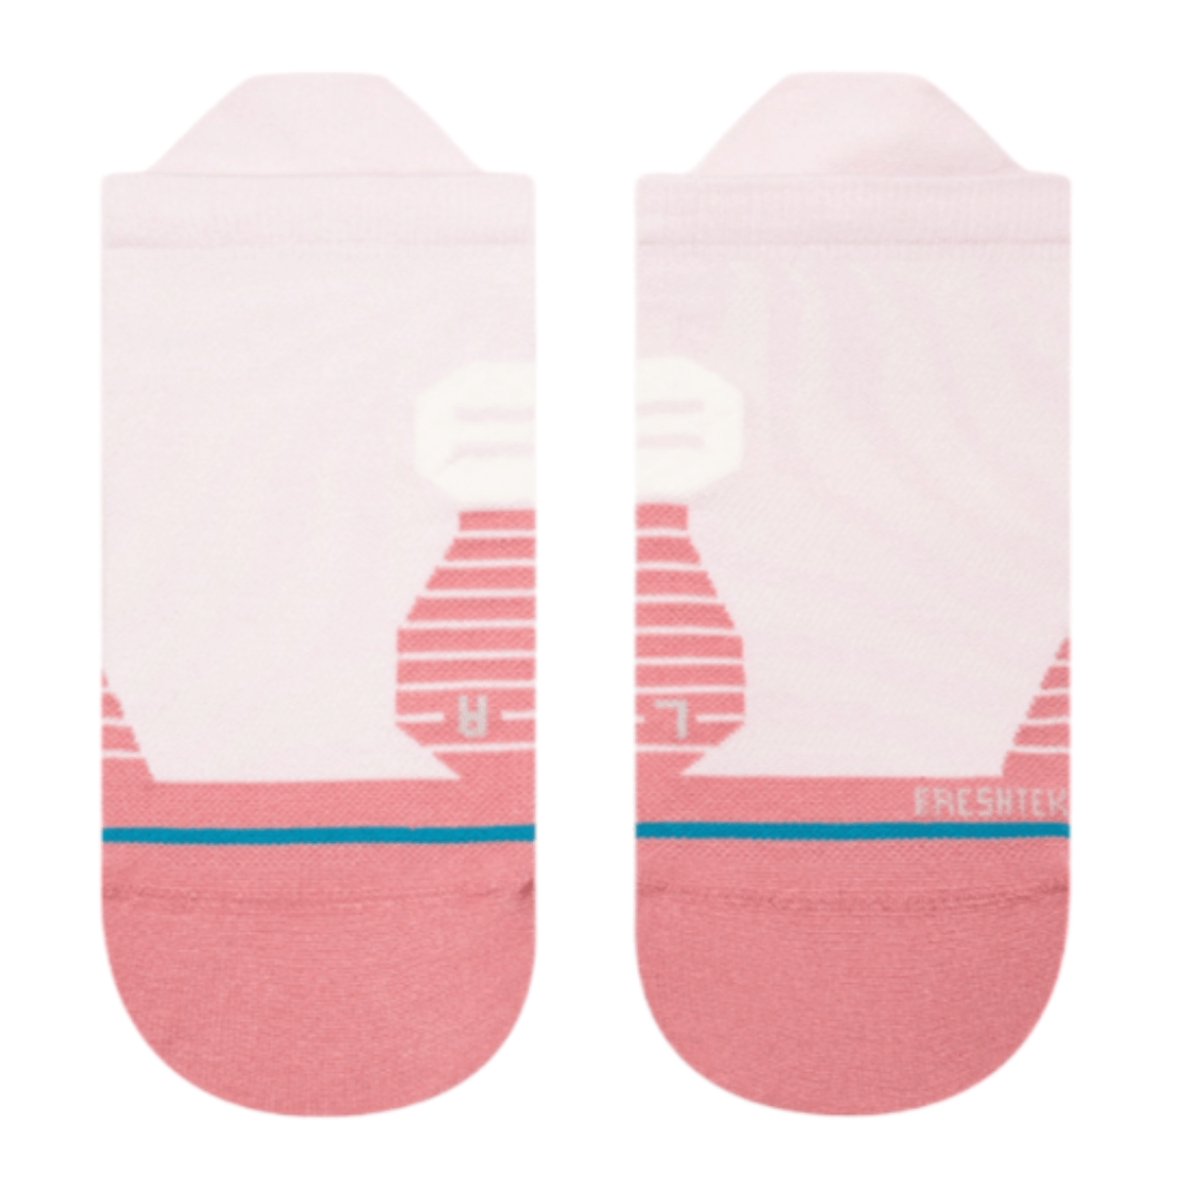 Stance Exotic Socks in Lilac Ice in Medium - BoardCo